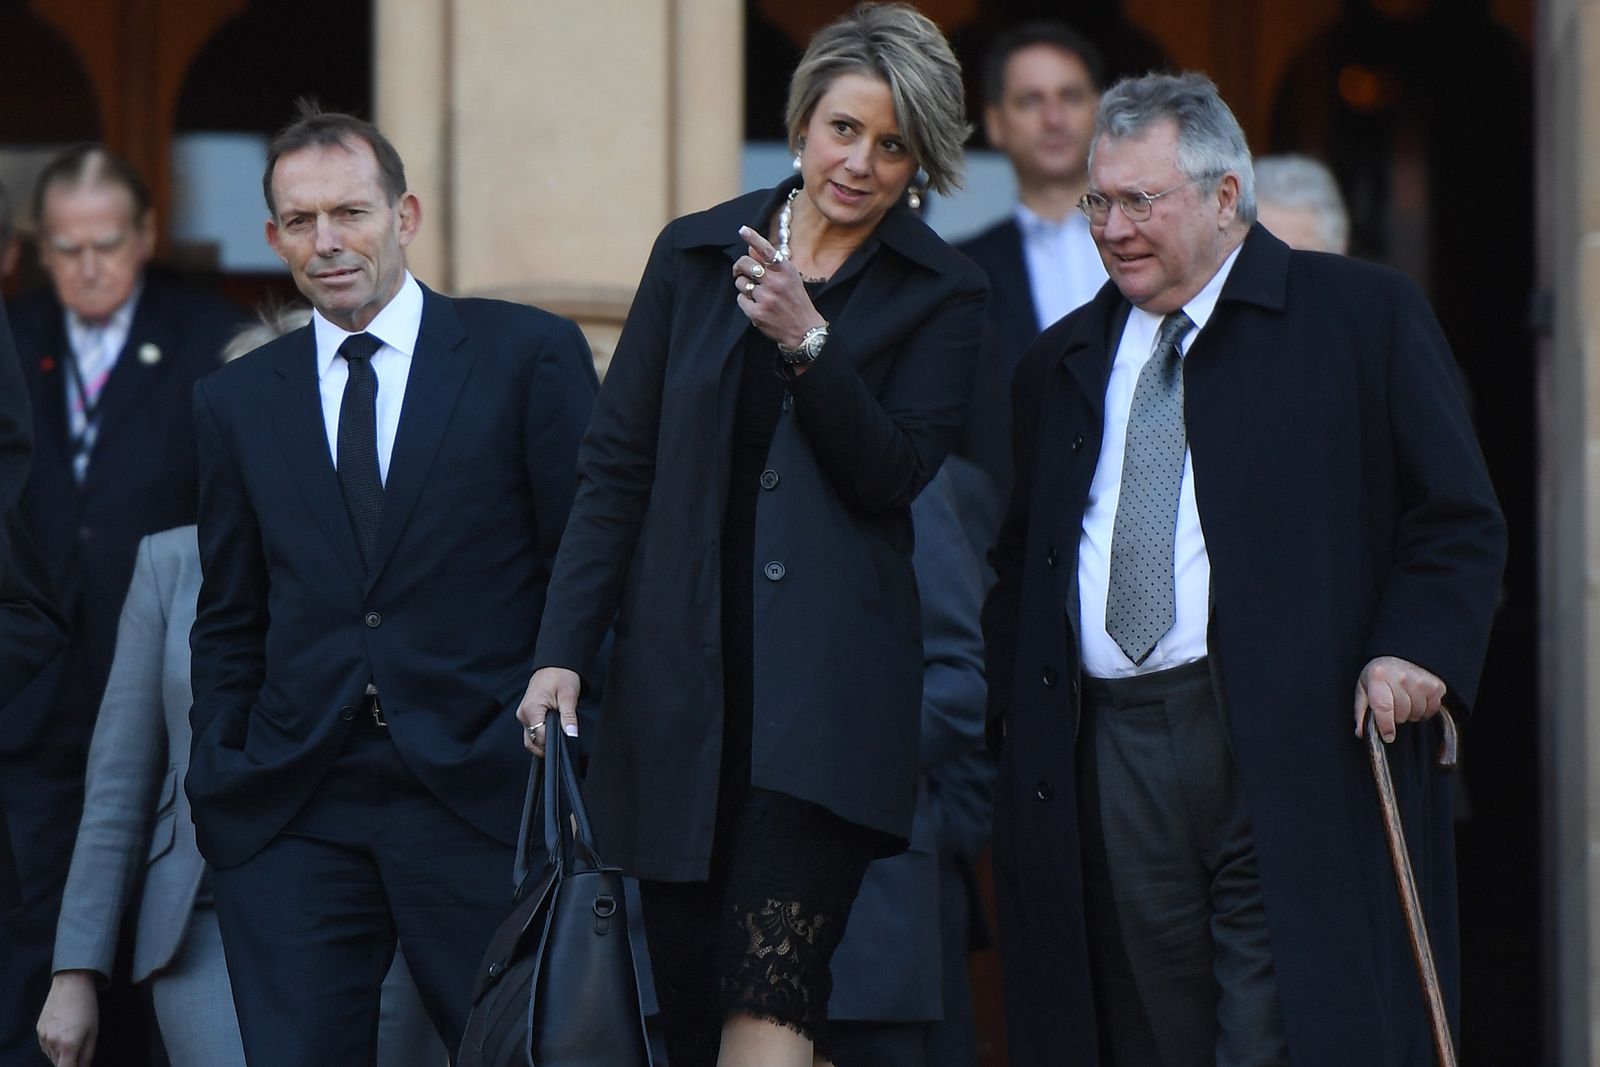 Former prime minister Tony Abbott, former NSW Premier Kristina Keneally and former NSW Treasurer Michael Egan. (AAP)